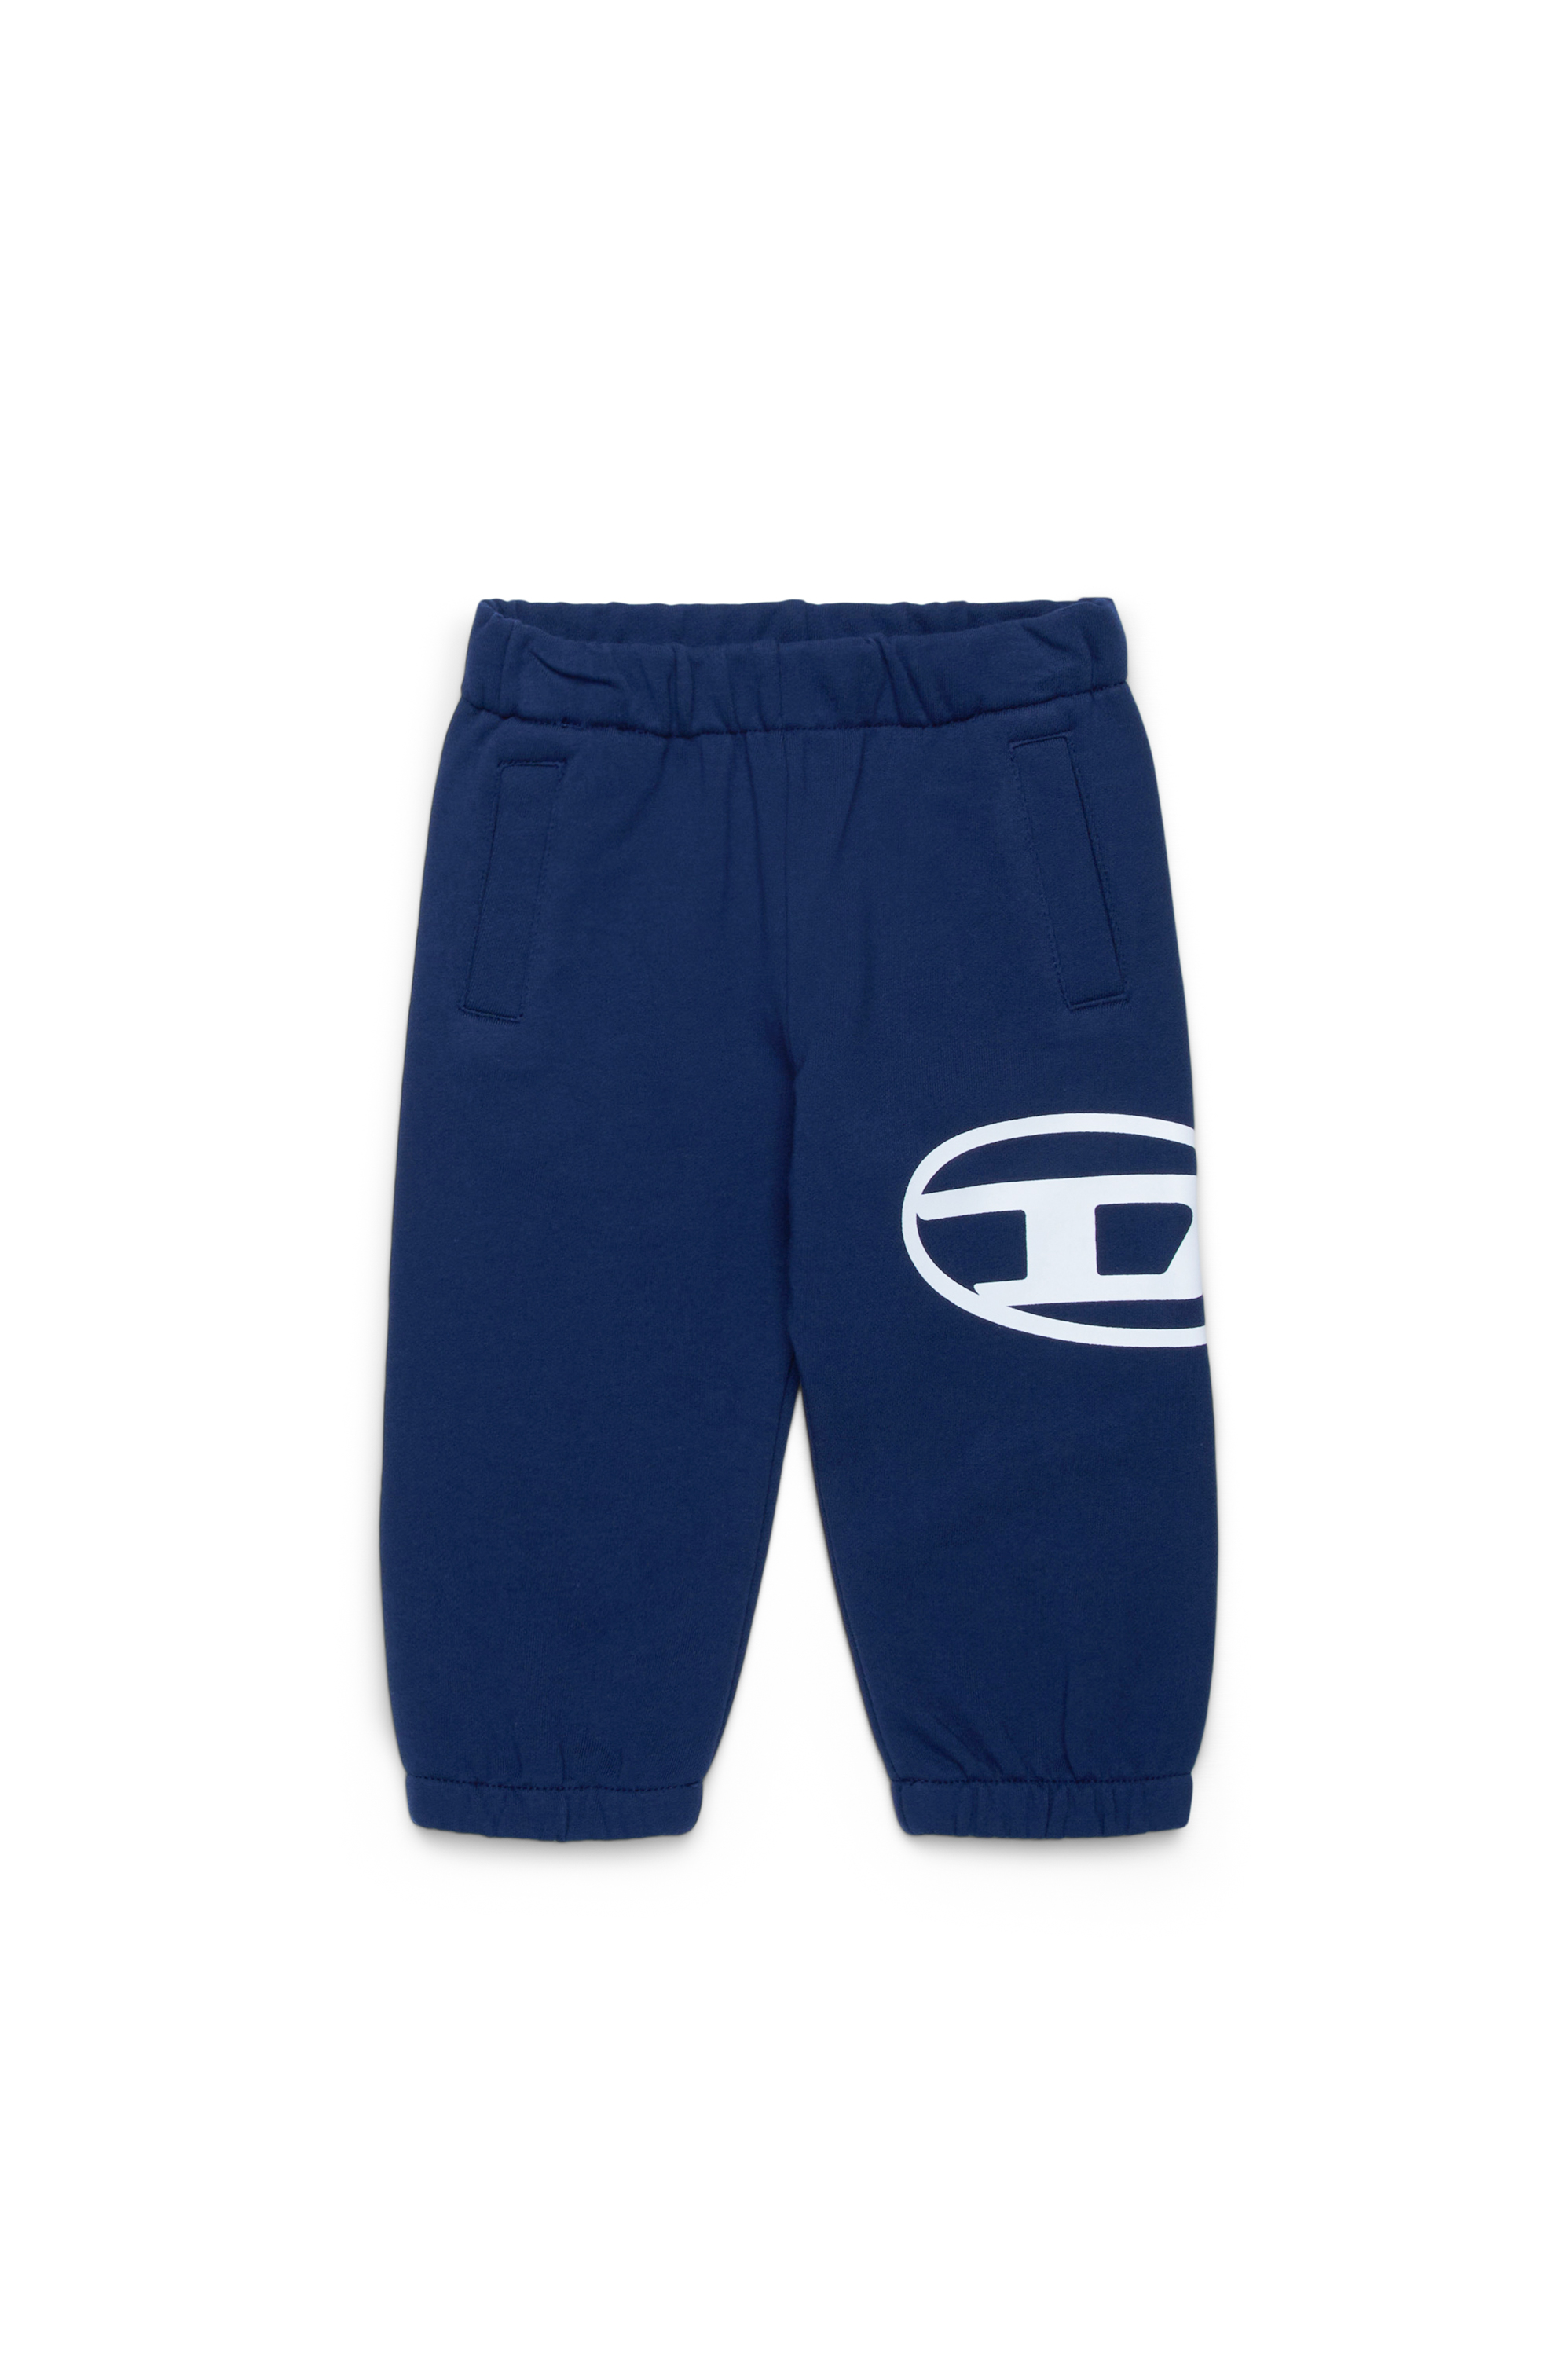 Diesel - PCERB, Unisex Pantalones deportivos con estampado Oval D in Azul marino - Image 1